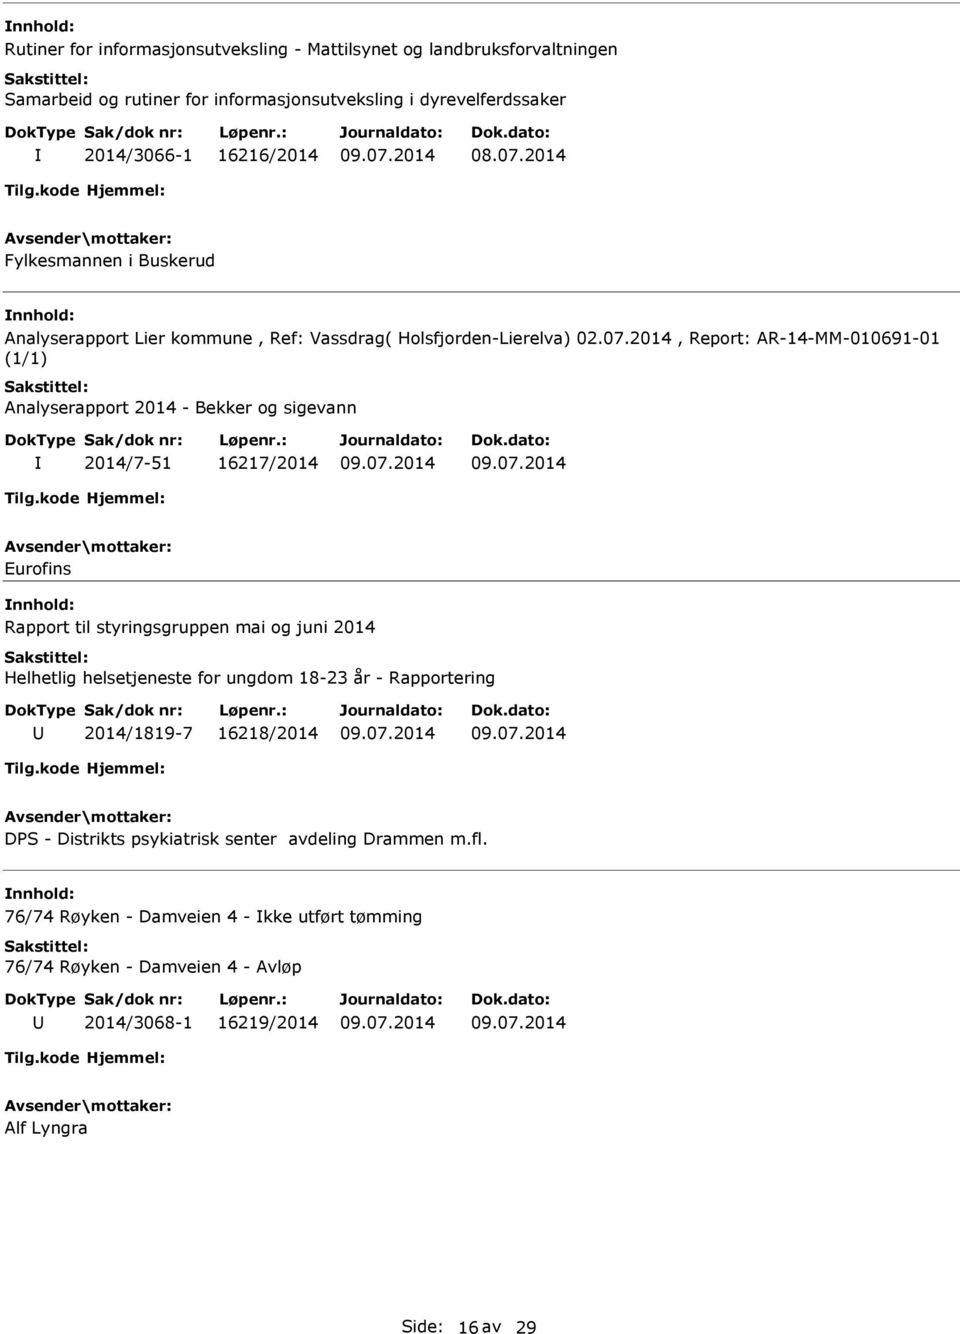 2014, Report: AR-14-MM-010691-01 (1/1) Analyserapport 2014 - Bekker og sigevann 2014/7-51 16217/2014 Eurofins Rapport til styringsgruppen mai og juni 2014 Helhetlig